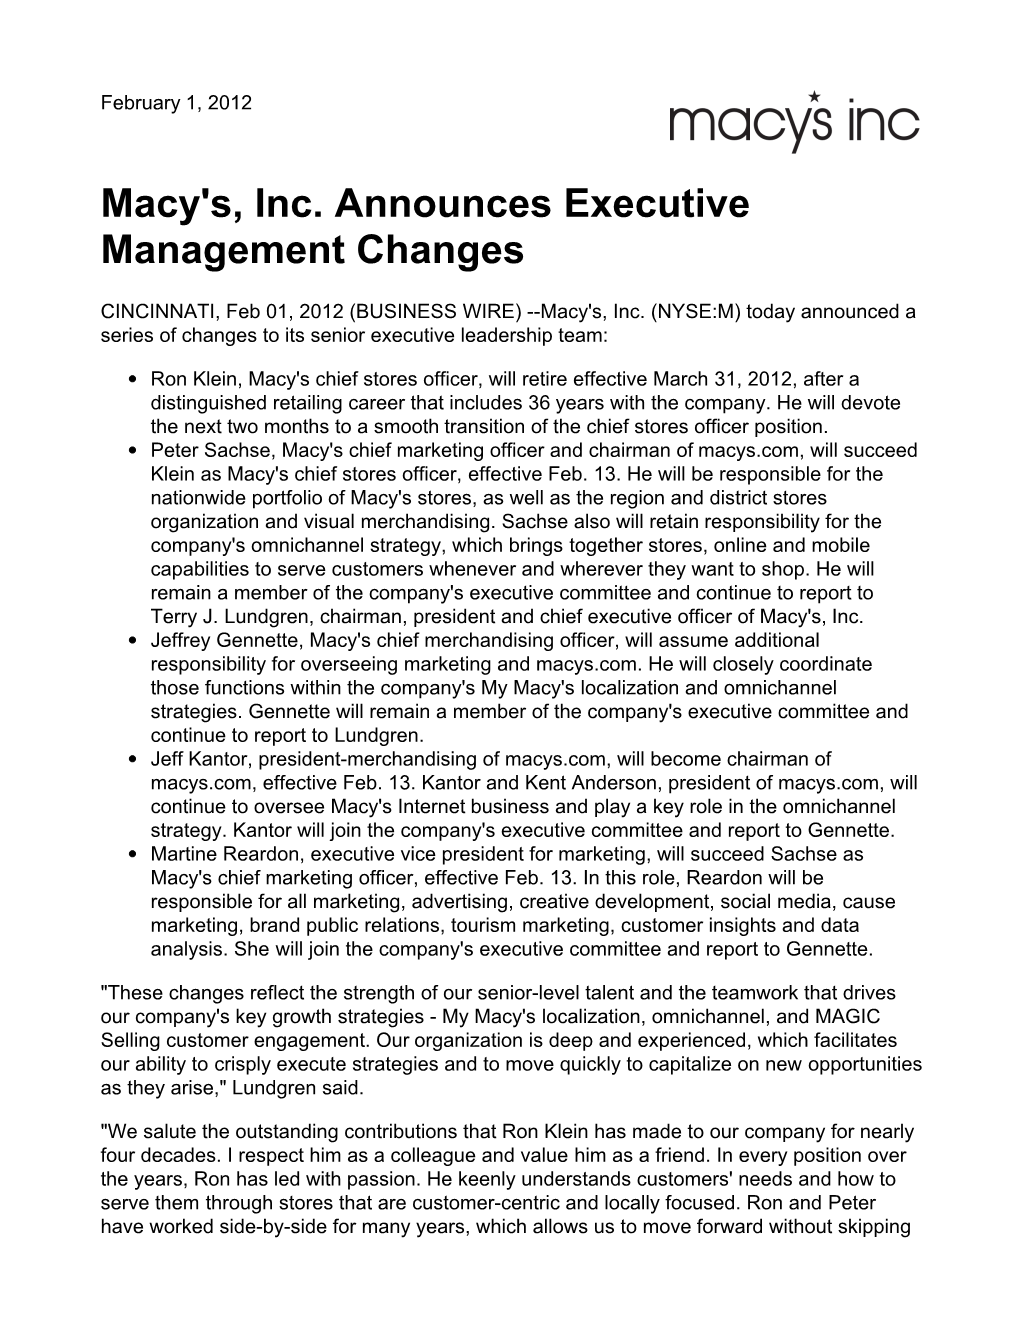 Macy's, Inc. Announces Executive Management Changes